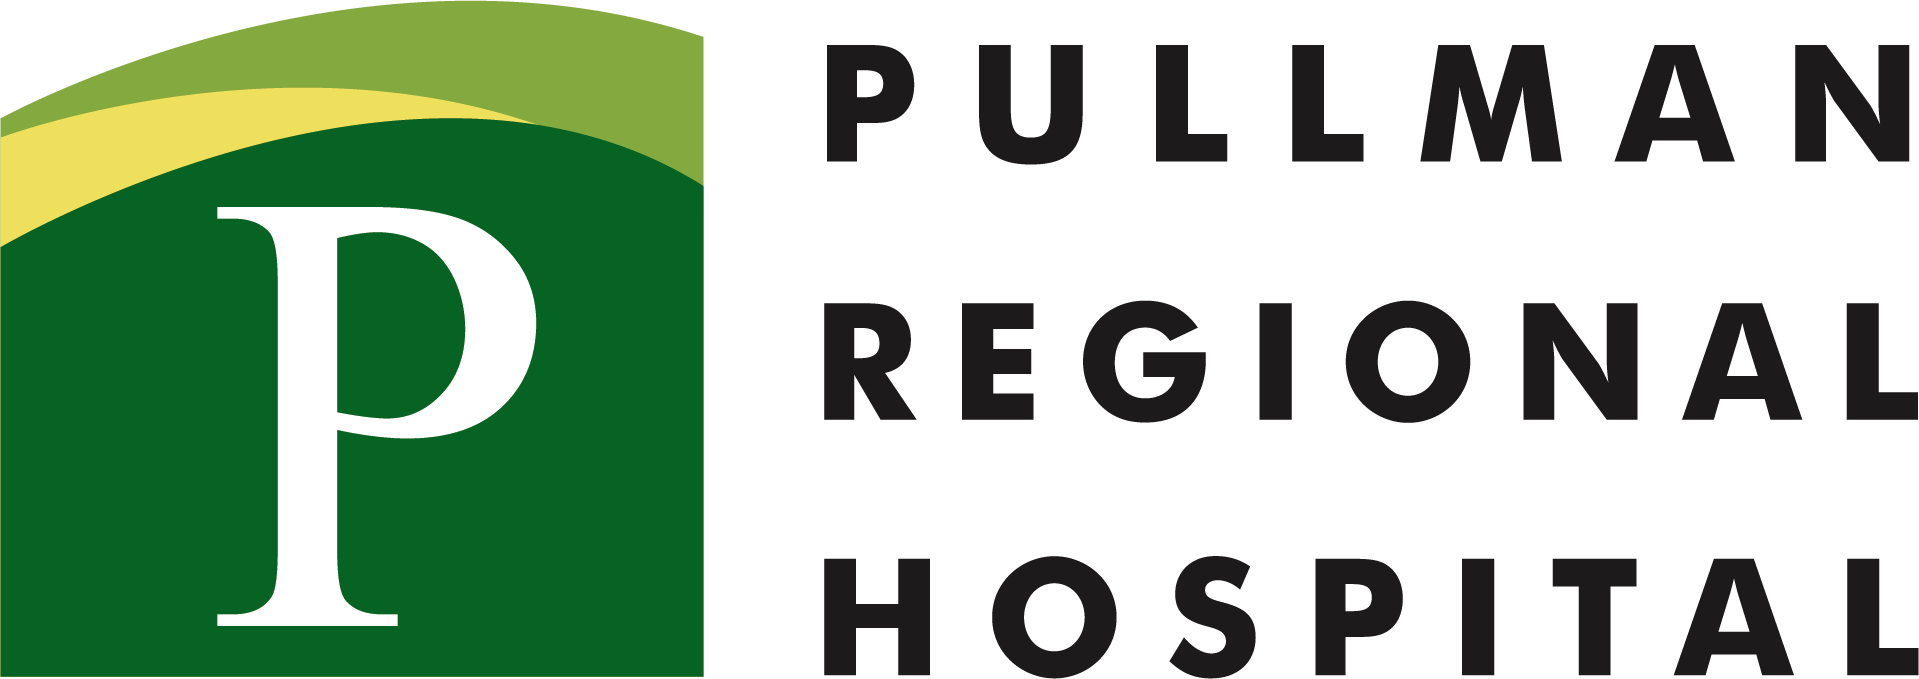 Pullman Regional Hospital Logo_Full Color